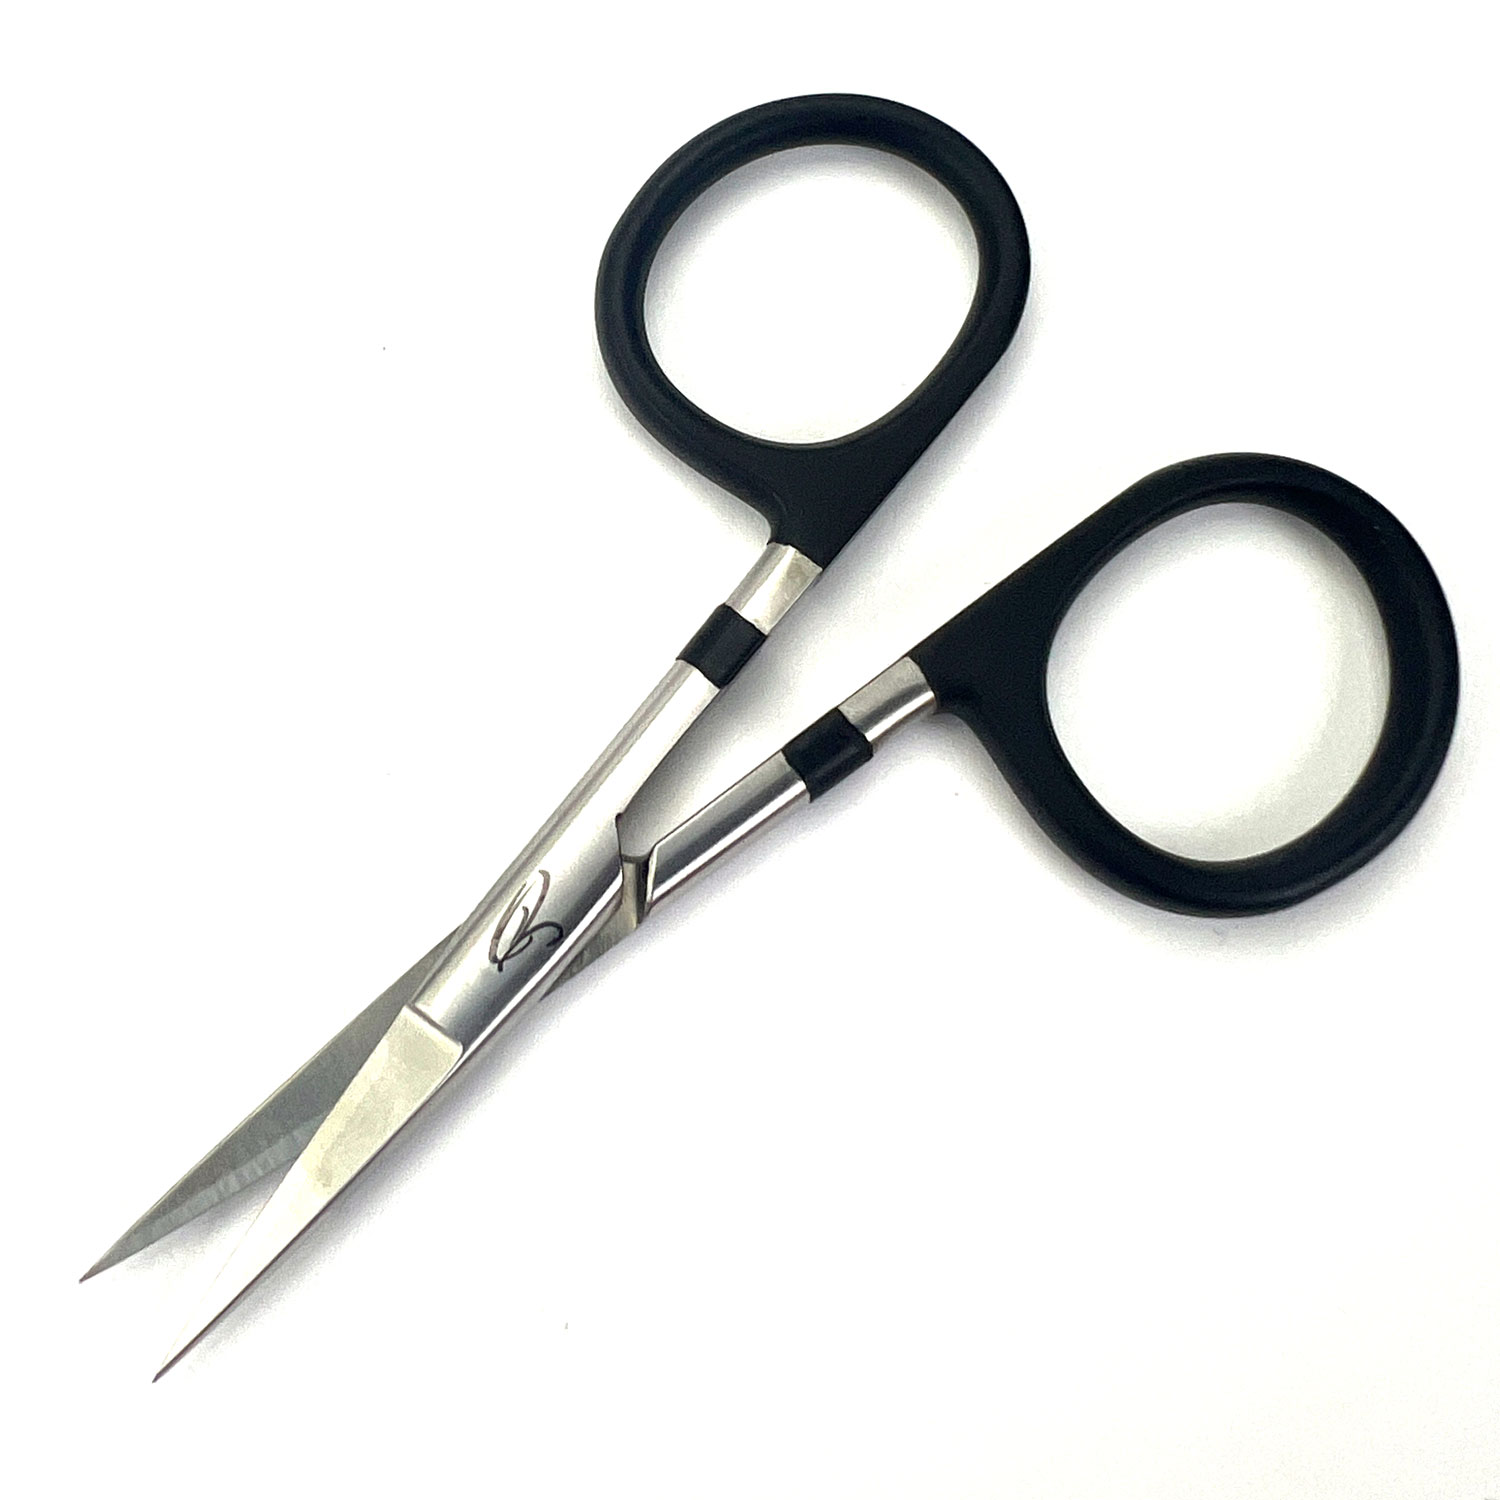 Tungsten Carbide Tying Scissors (black)